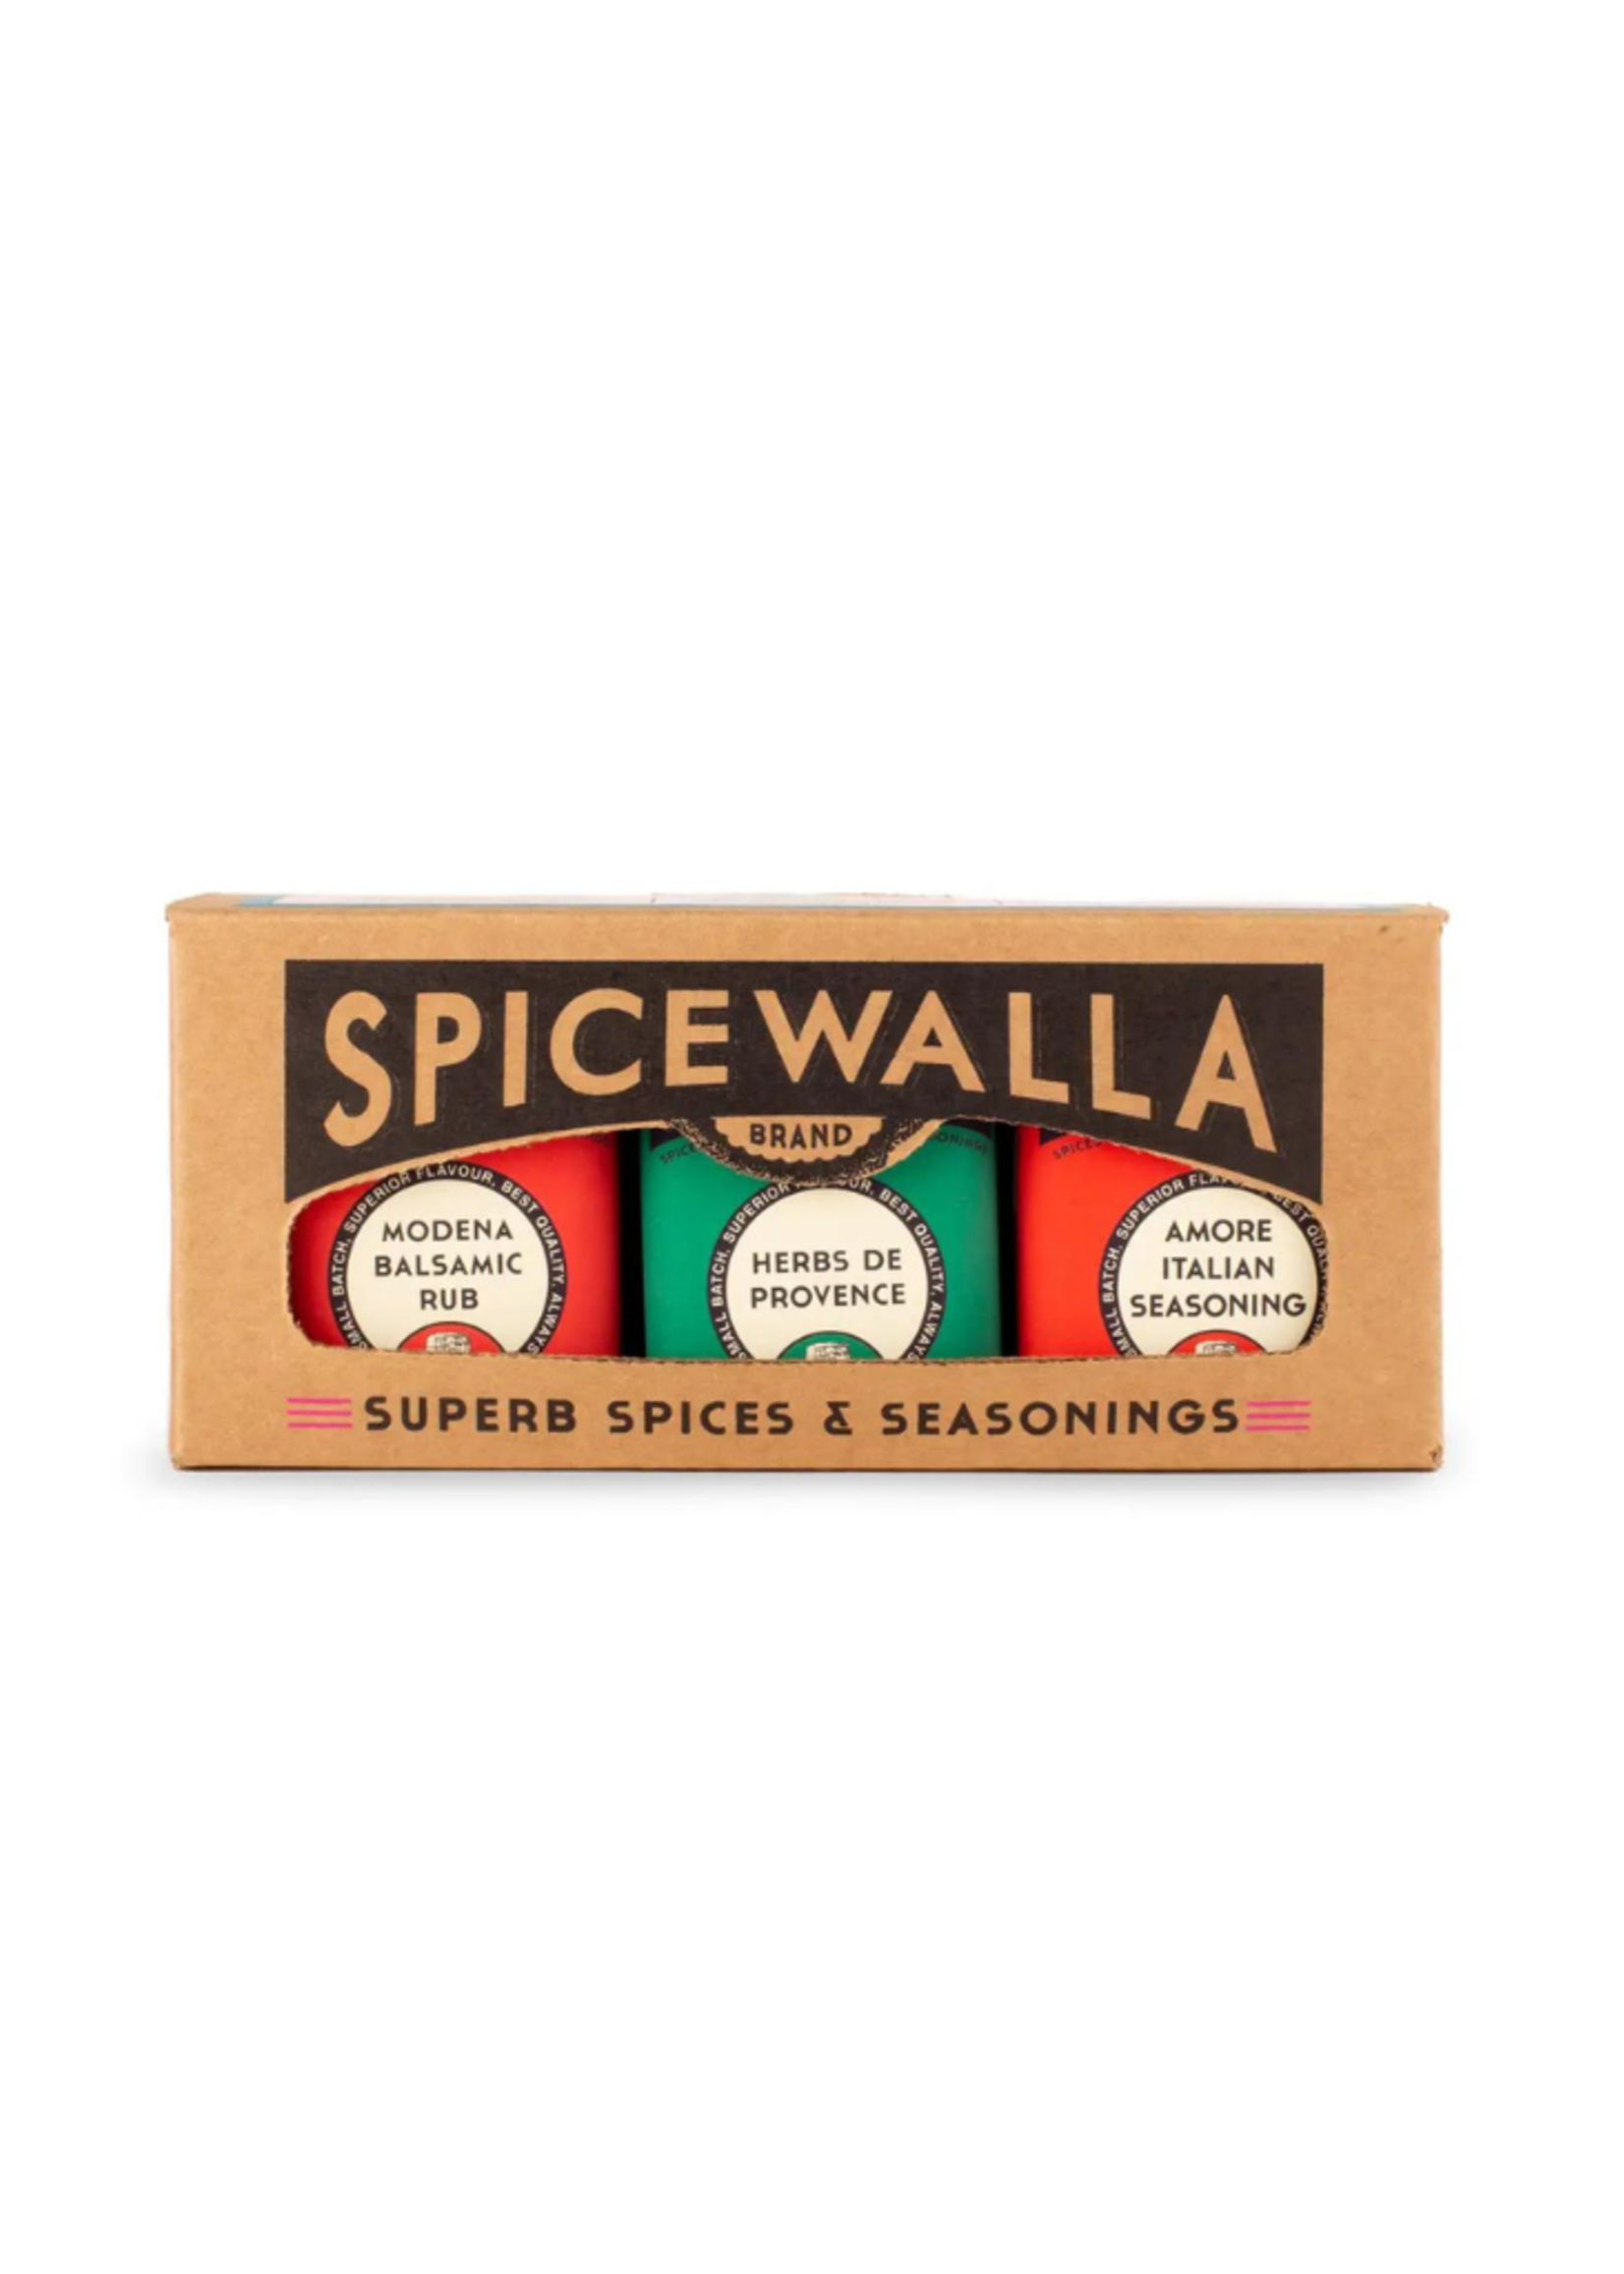 Spicewalla 3 Pack Mediterranean Collection